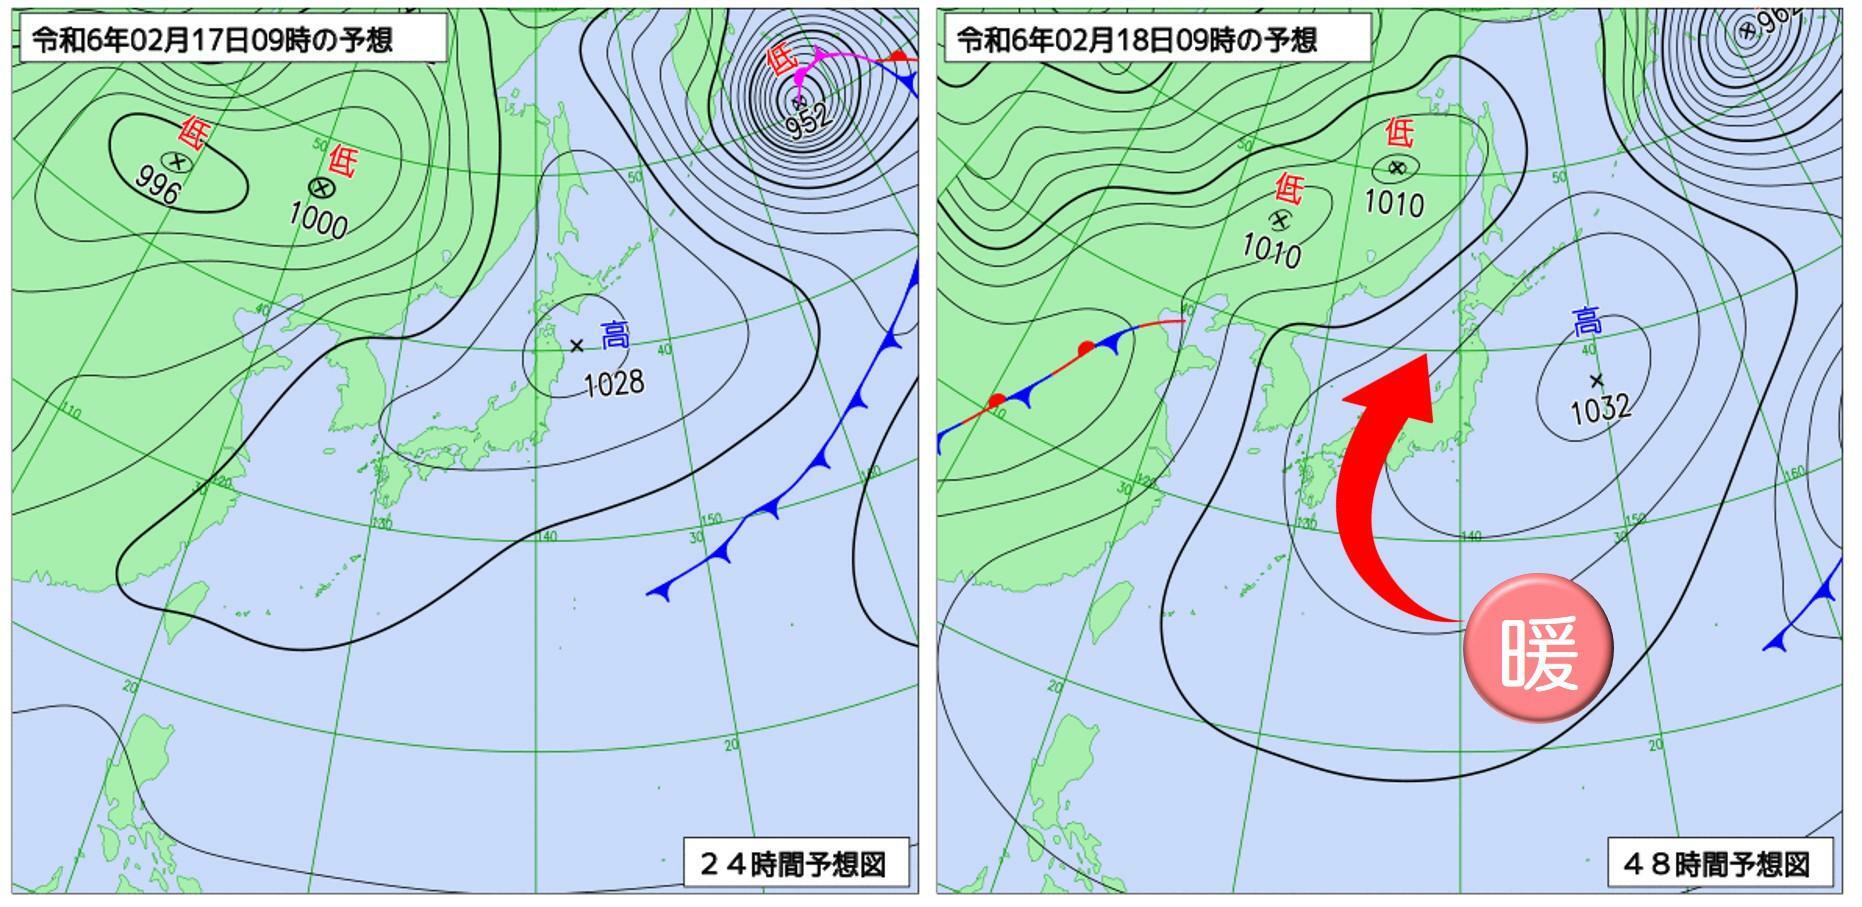 17日～18日にかけて南から高気圧に覆われ、暖気の流入が続く（天気図：気象庁HPより）。特に18日（右図）は高気圧の縁を回る暖気が日本海側に吹き降り、フェーン現象で日本海側の気温が急上昇。